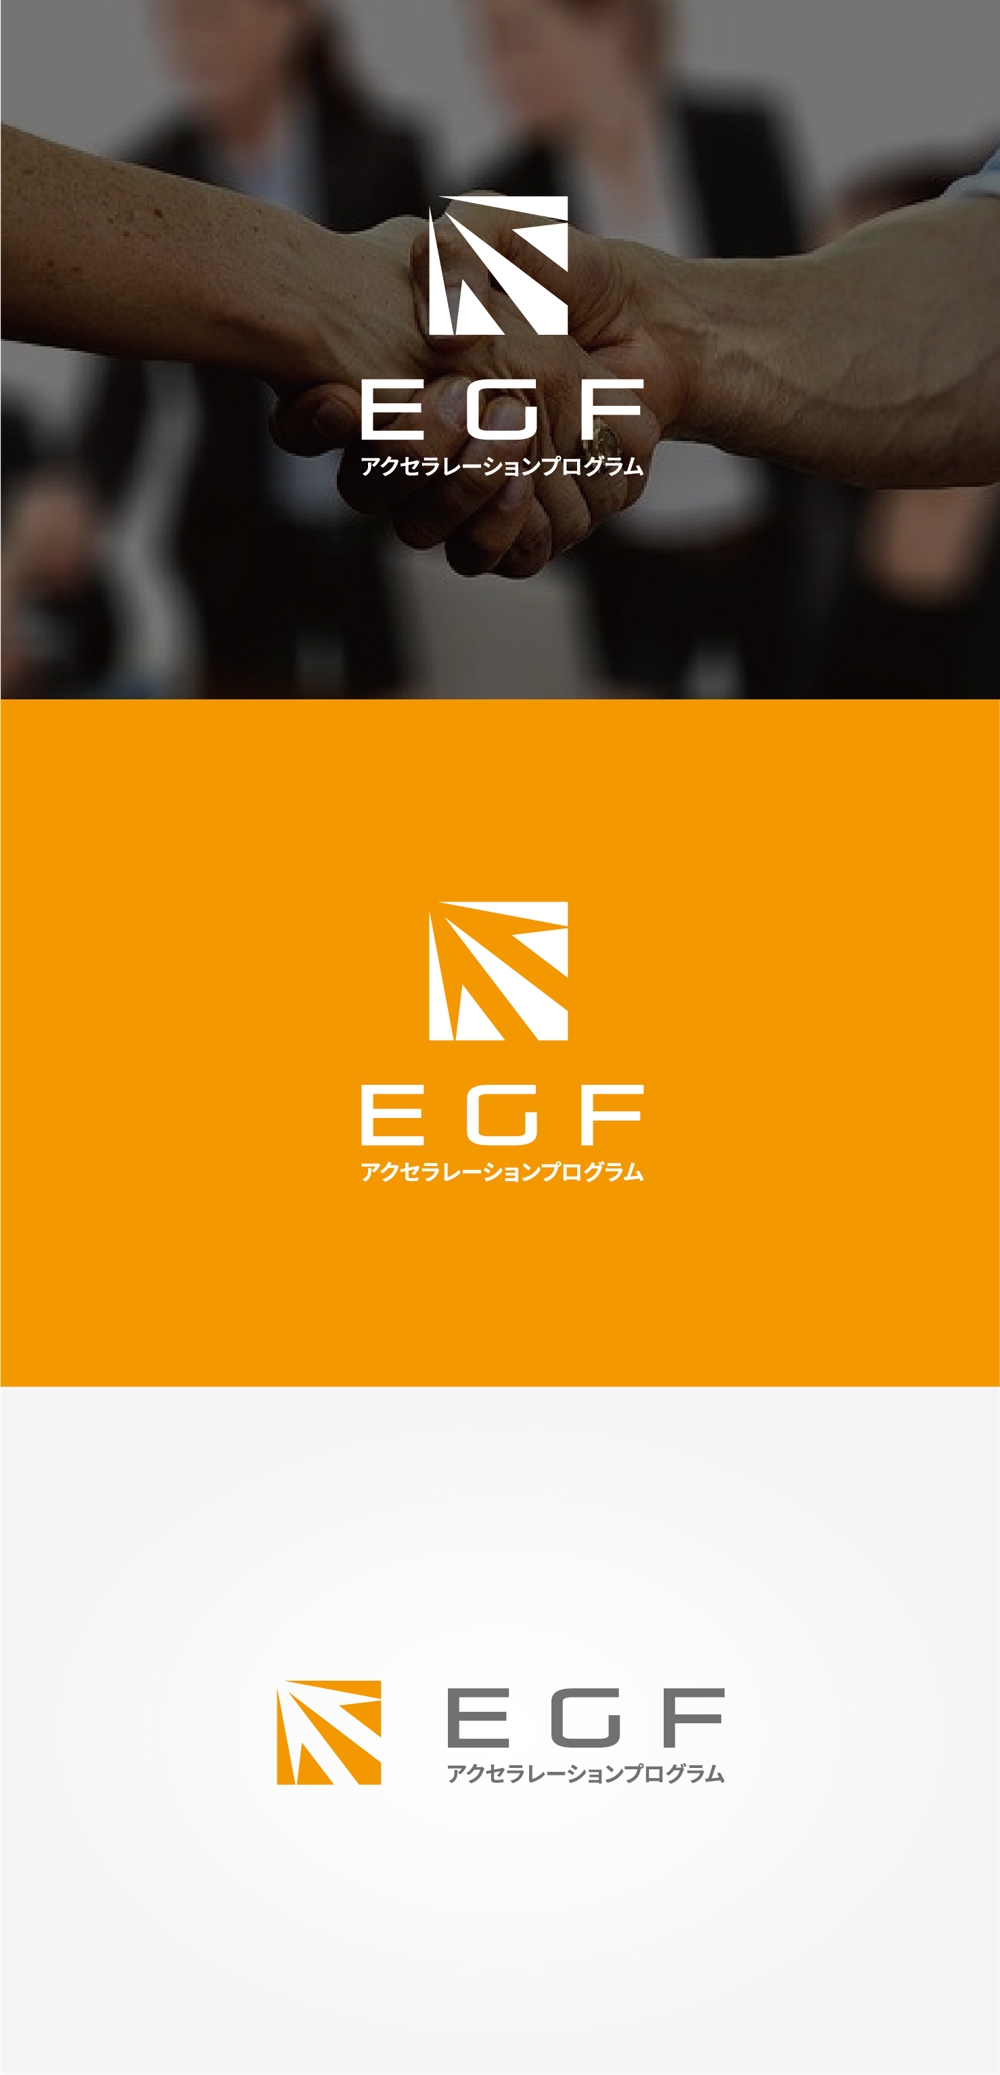 県の「創業支援プログラム」で使用するロゴのデザイン